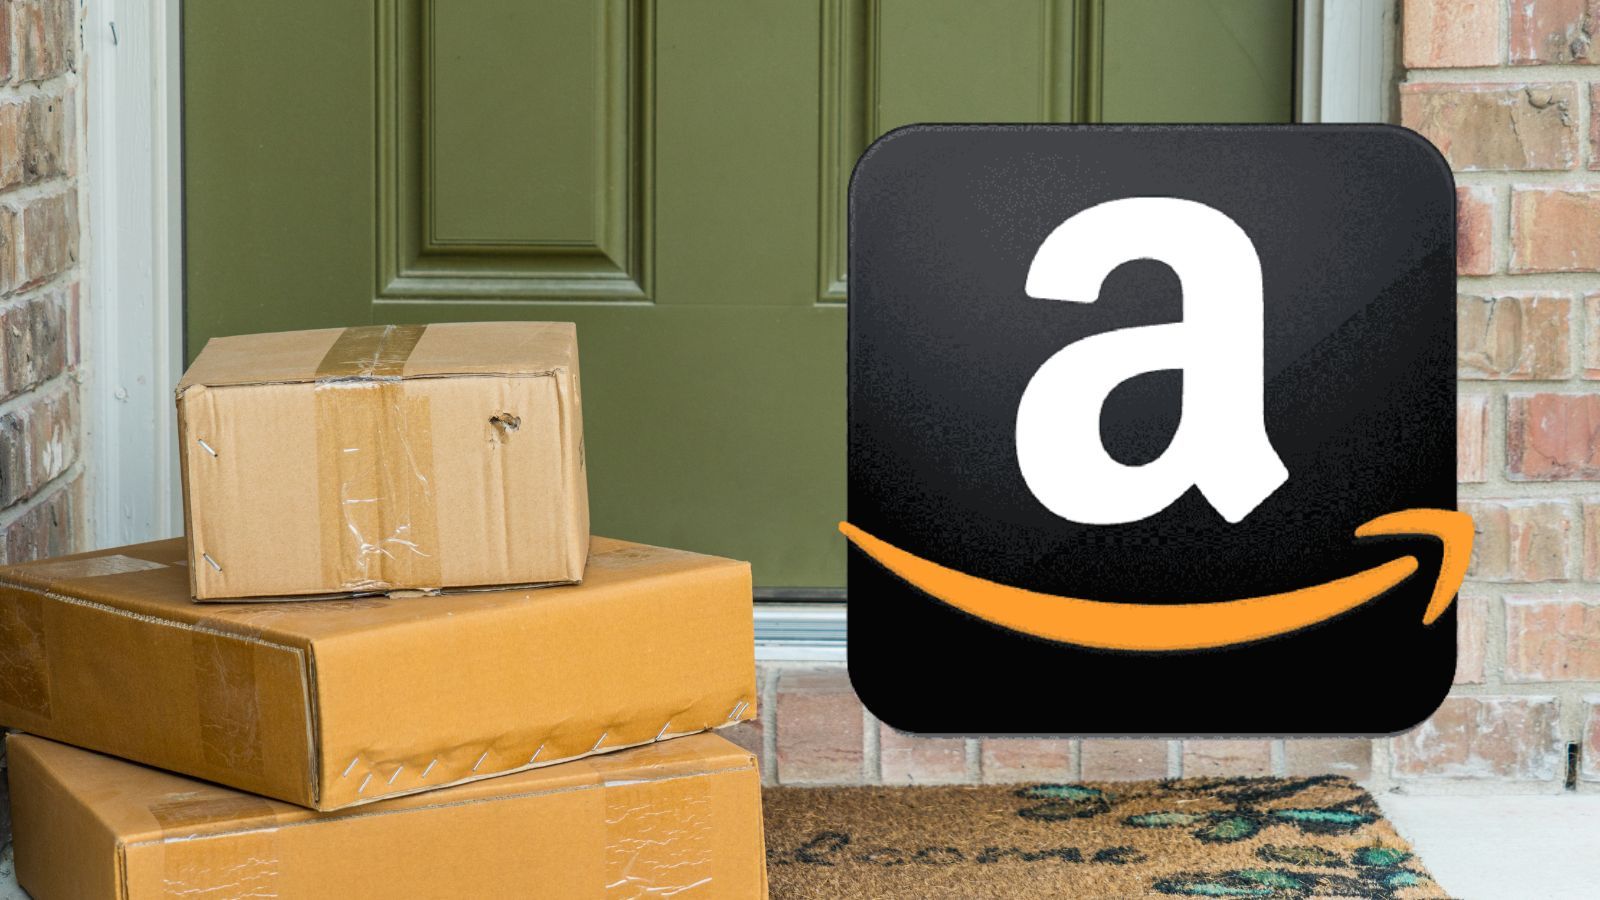 Amazon da SOGNO con le offerte GRATIS e sconti al 70%